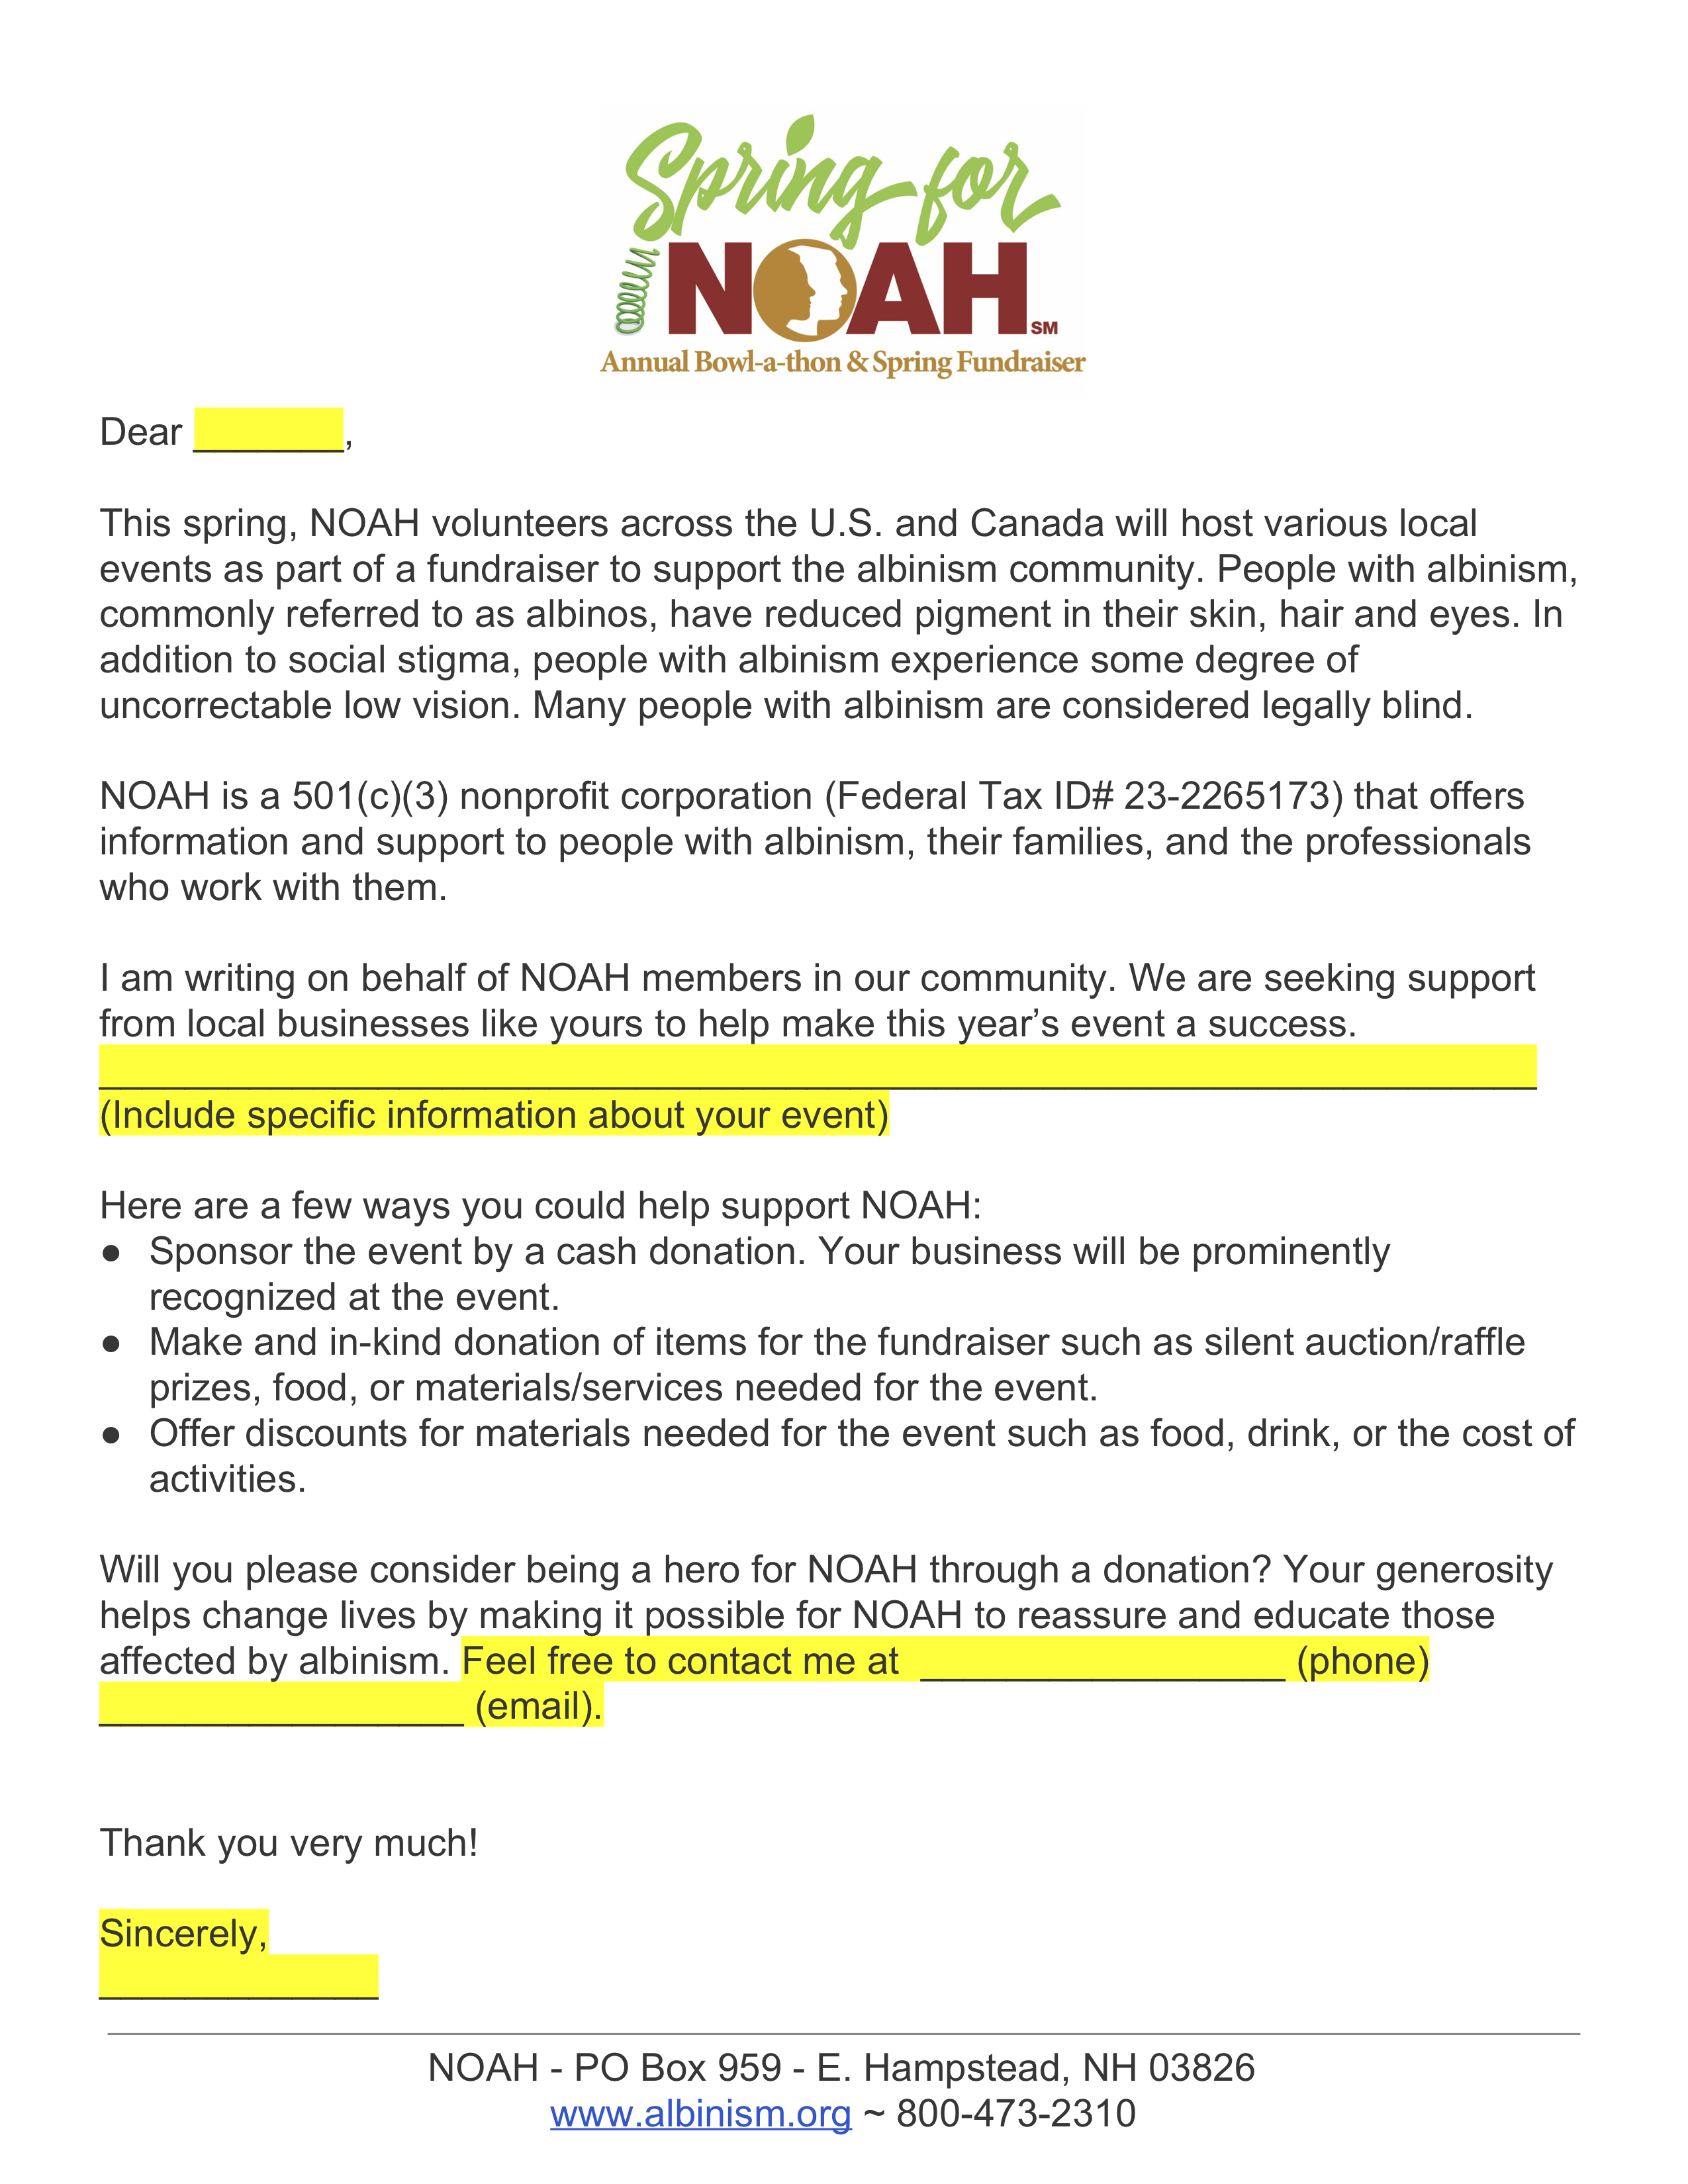 Spring for NOAH Fundraiser Business Solicitation Letter